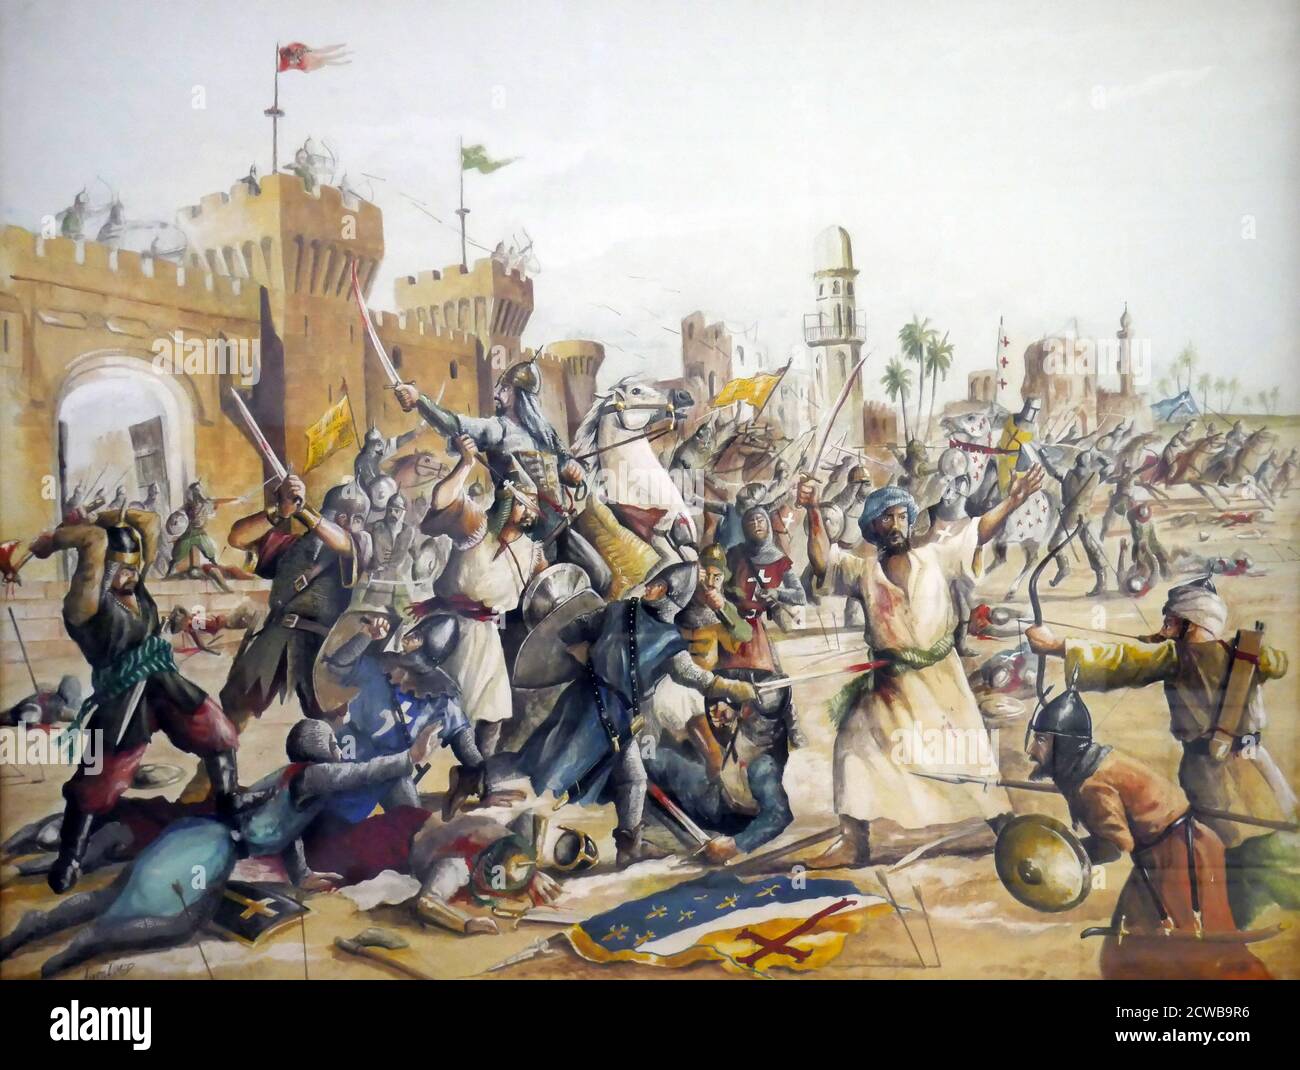 Pintura egipcia contemporánea de las cruzadas en el siglo 12. Las  invasiones de los cruzados de Egipto (1154-1169) fueron una serie de  campañas emprendidas por el Reino de Jerusalén para fortalecer su